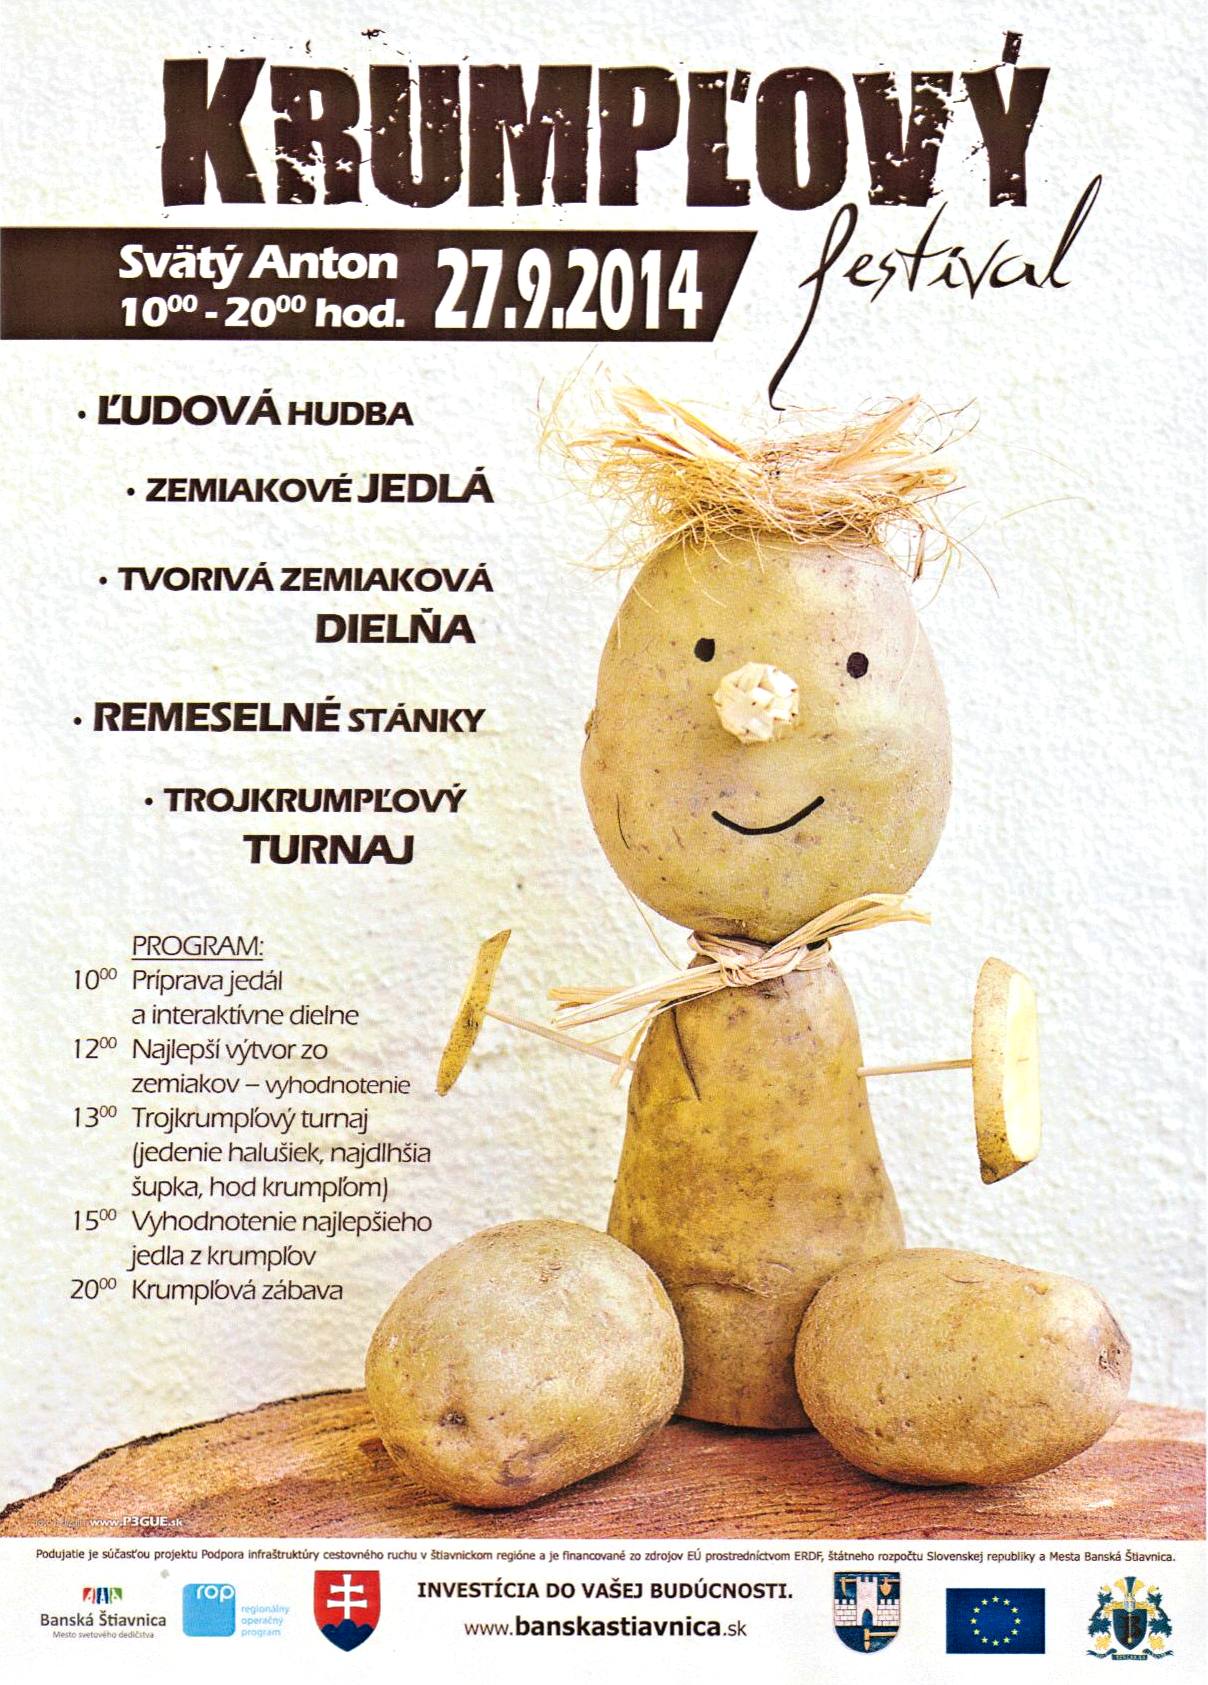     Krumpov festival 2014  Svt Anton - 2. ronk